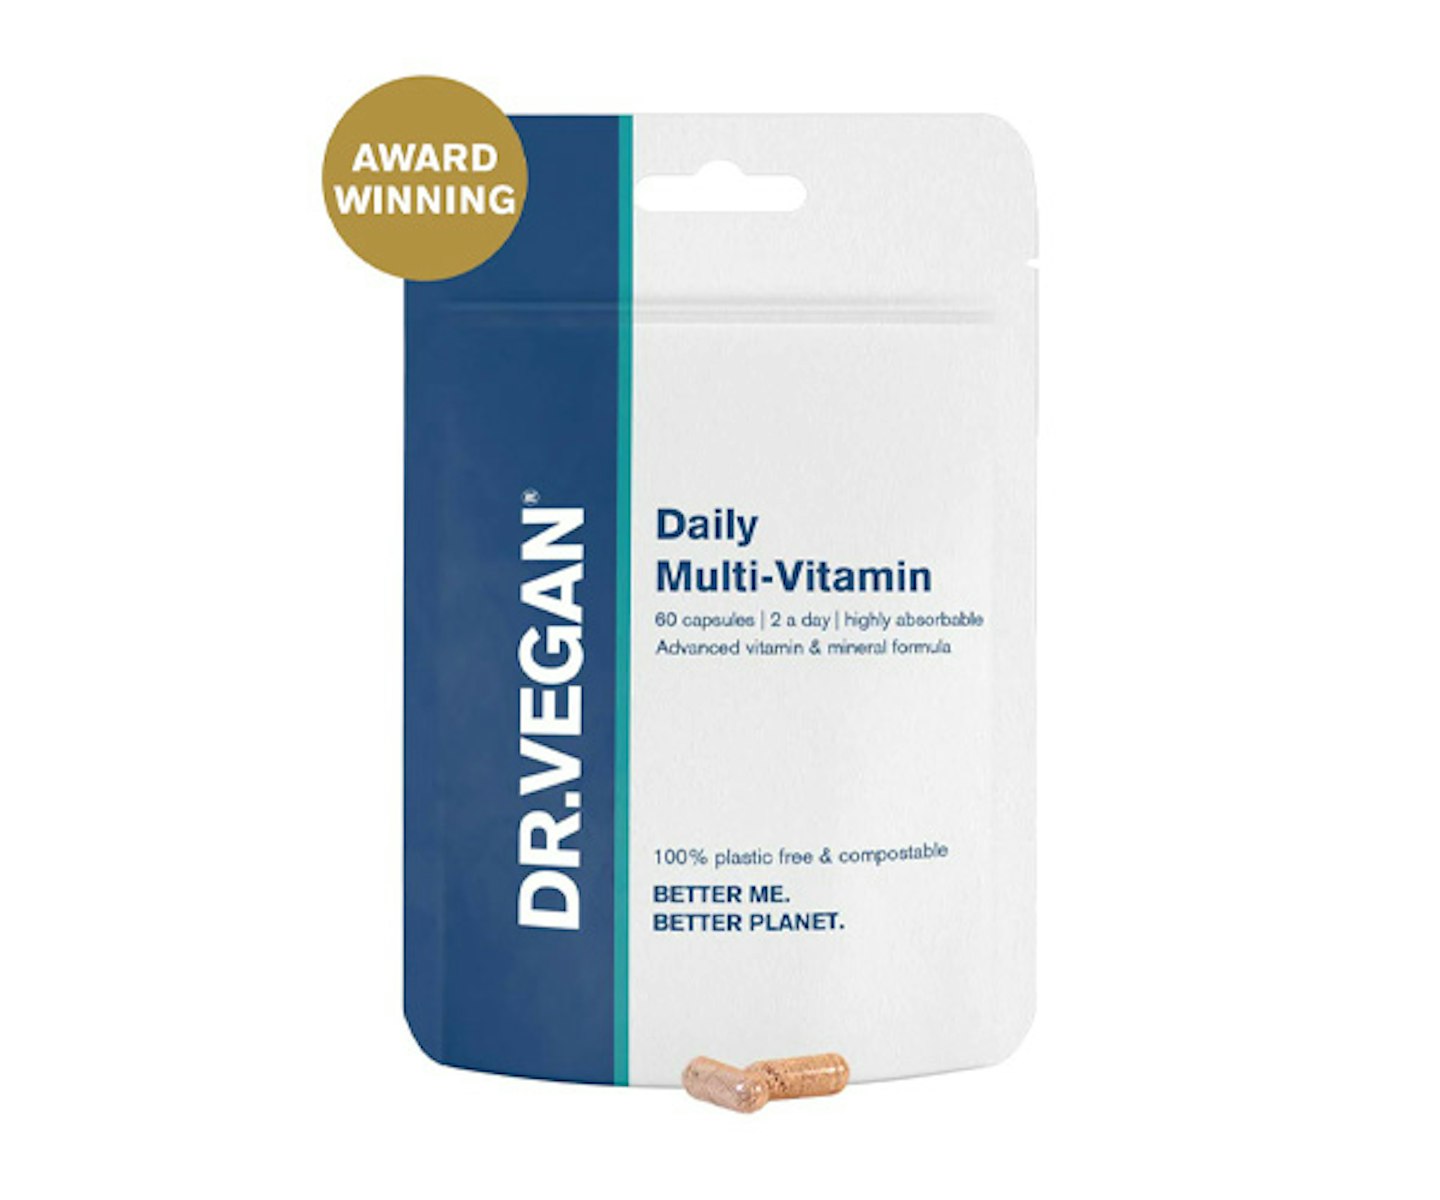 Daily Multi-Vitamin